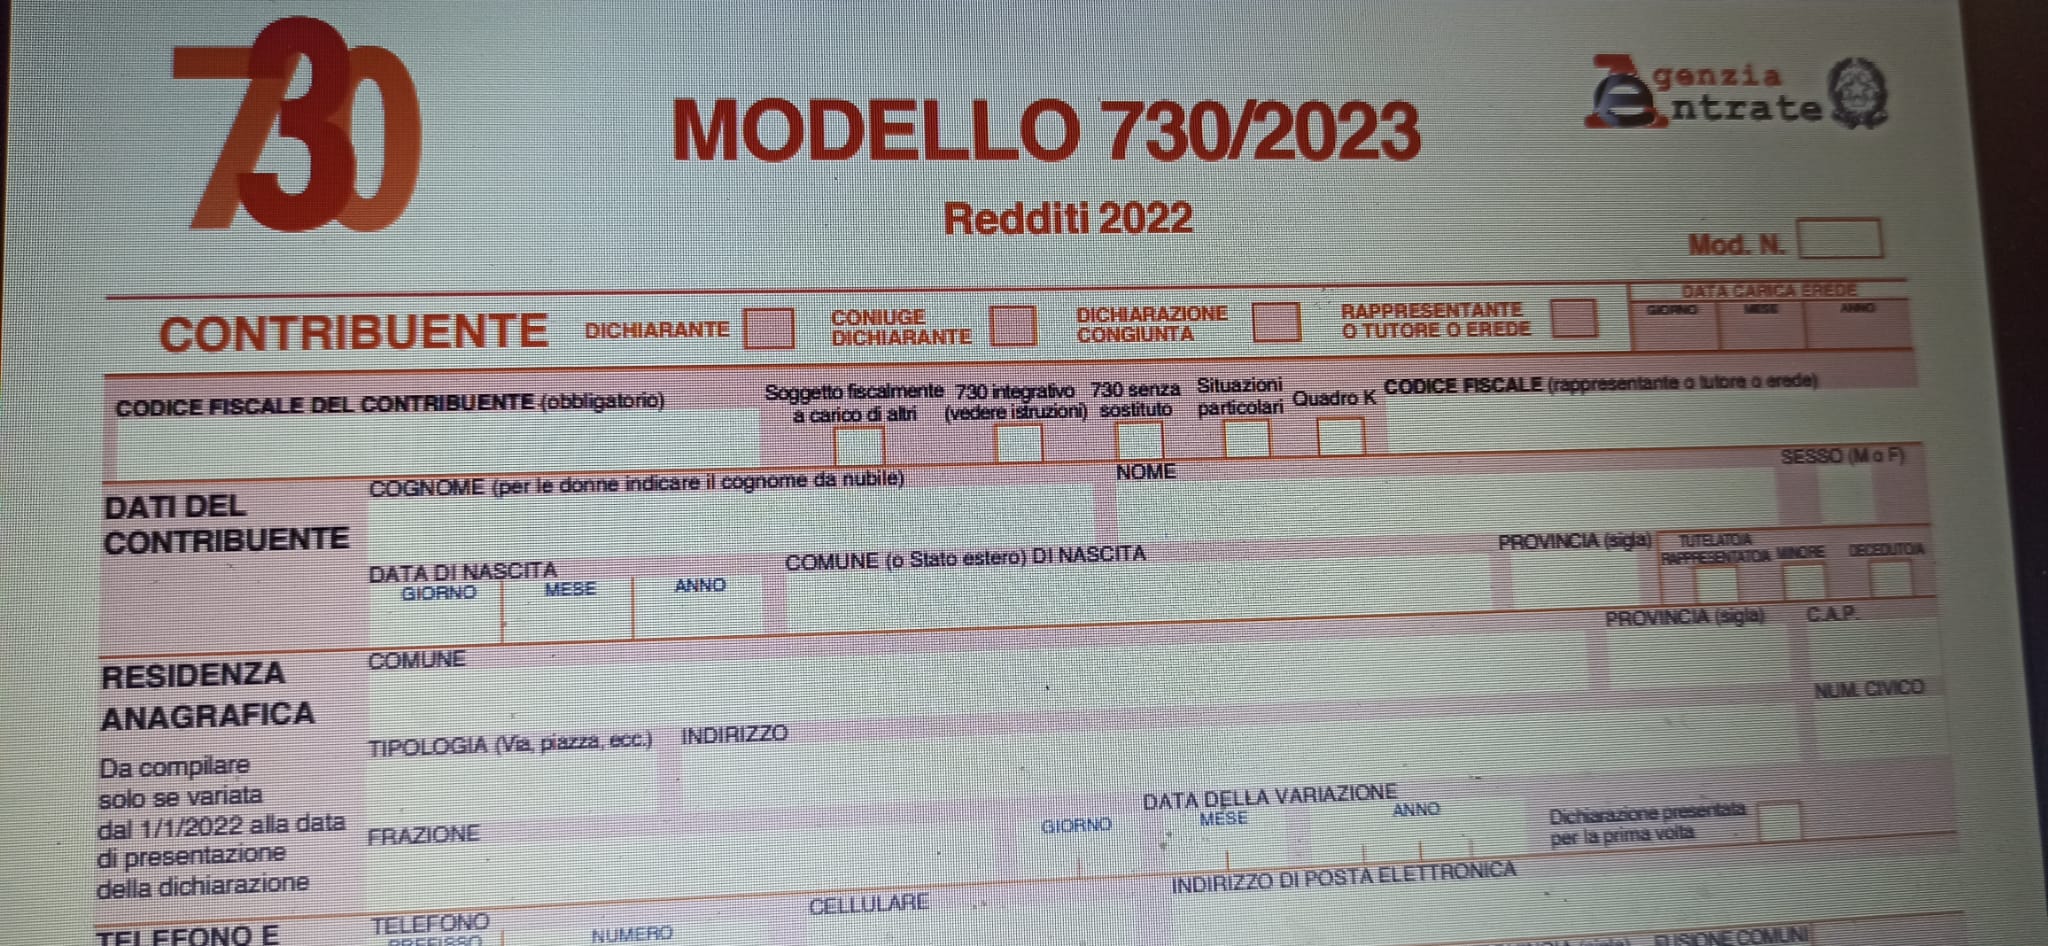 Modello 730/2023, approvato il nuovo modulo definitivo